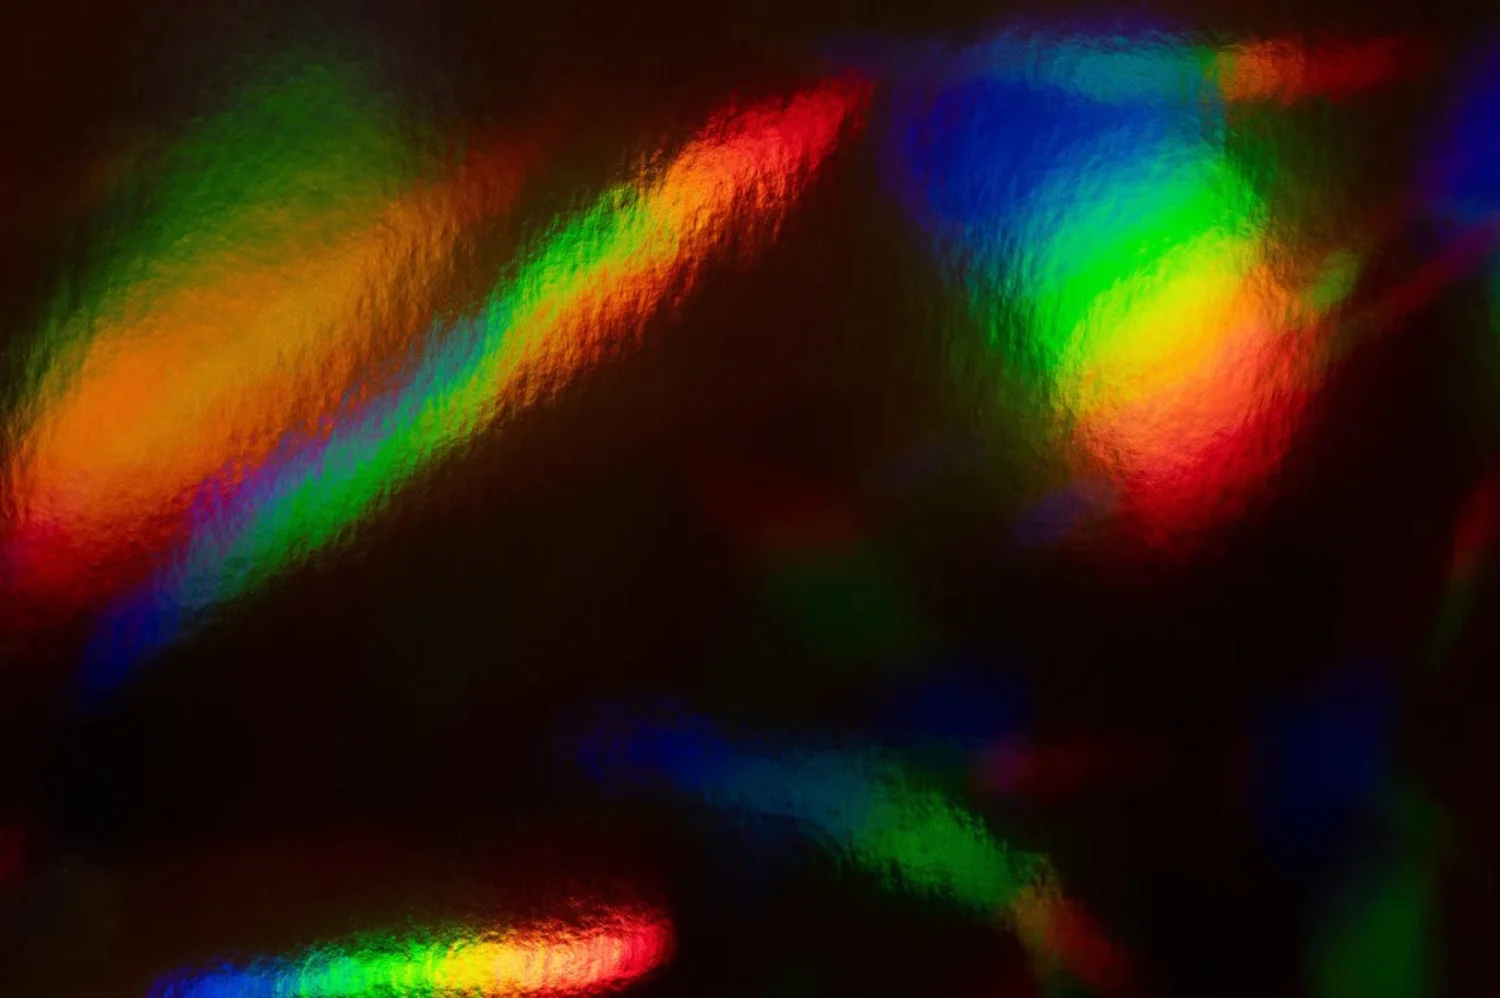 5203 12张全息纹理设计高分辨率闪烁多彩背景图片JPG文件 12 Holographic Iridescent Texture Background@GOOODME.COM